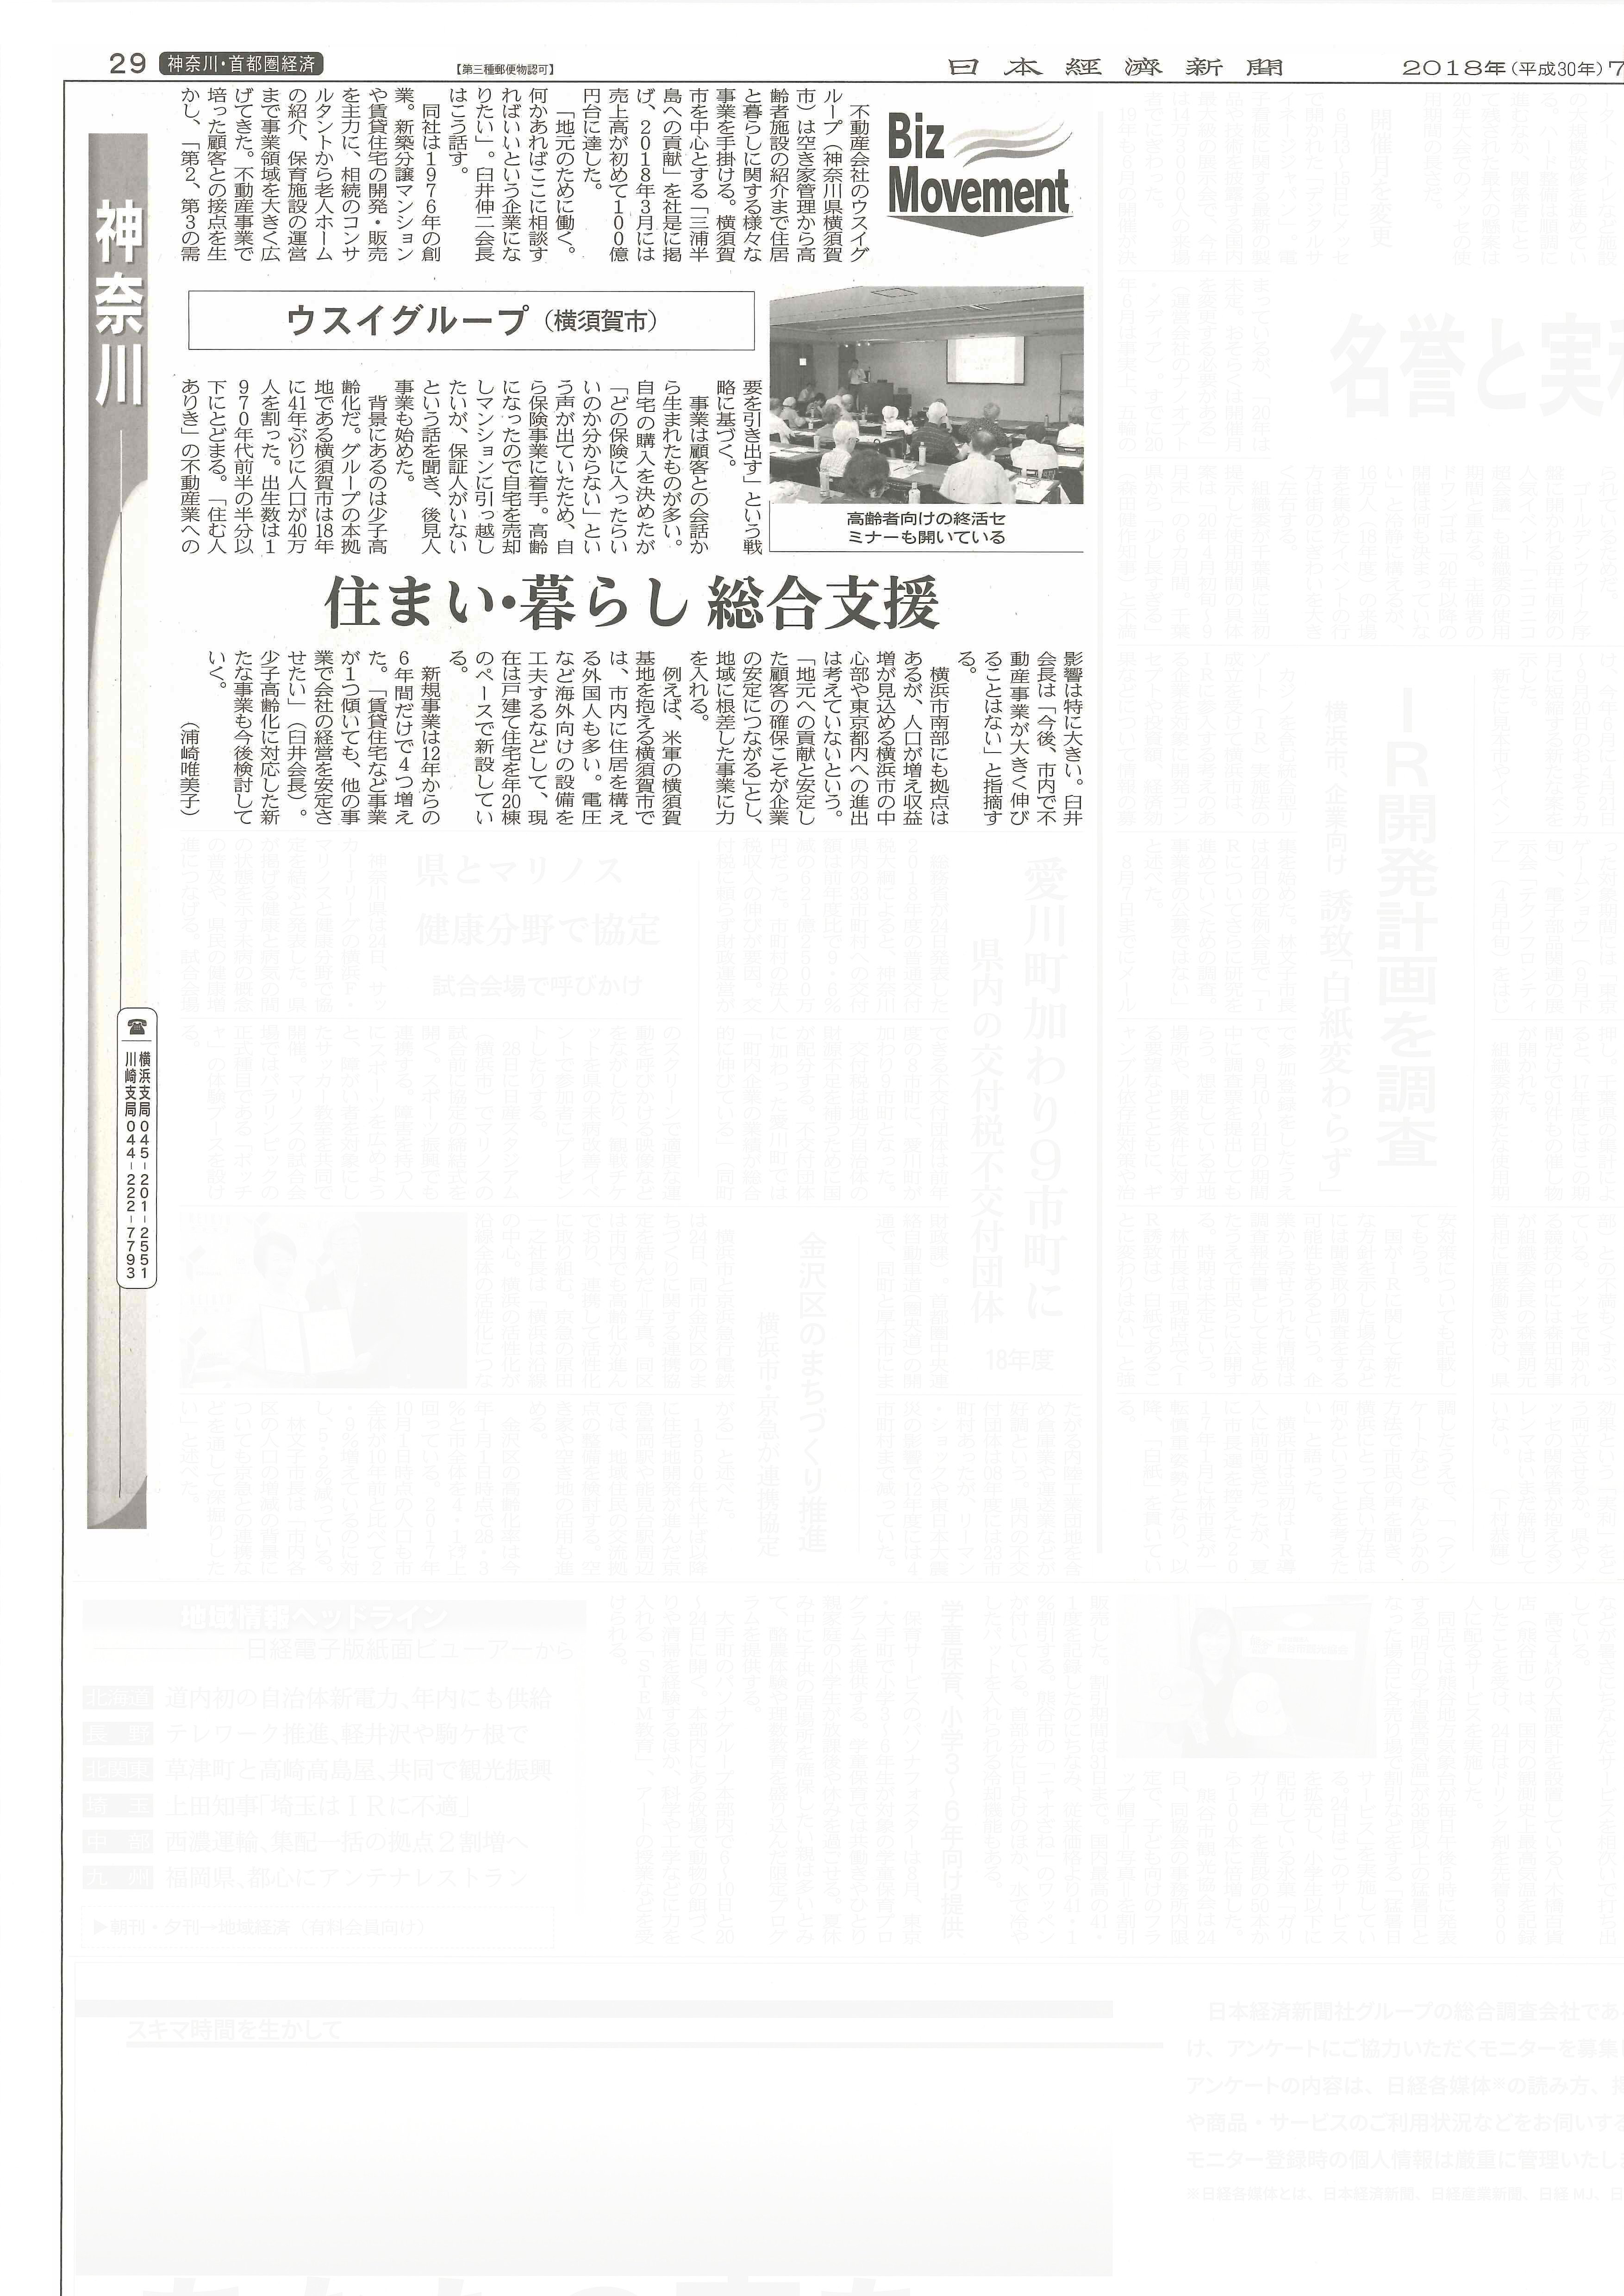 2018.07.25_日本経済新聞_神奈川面_ウスイグループ